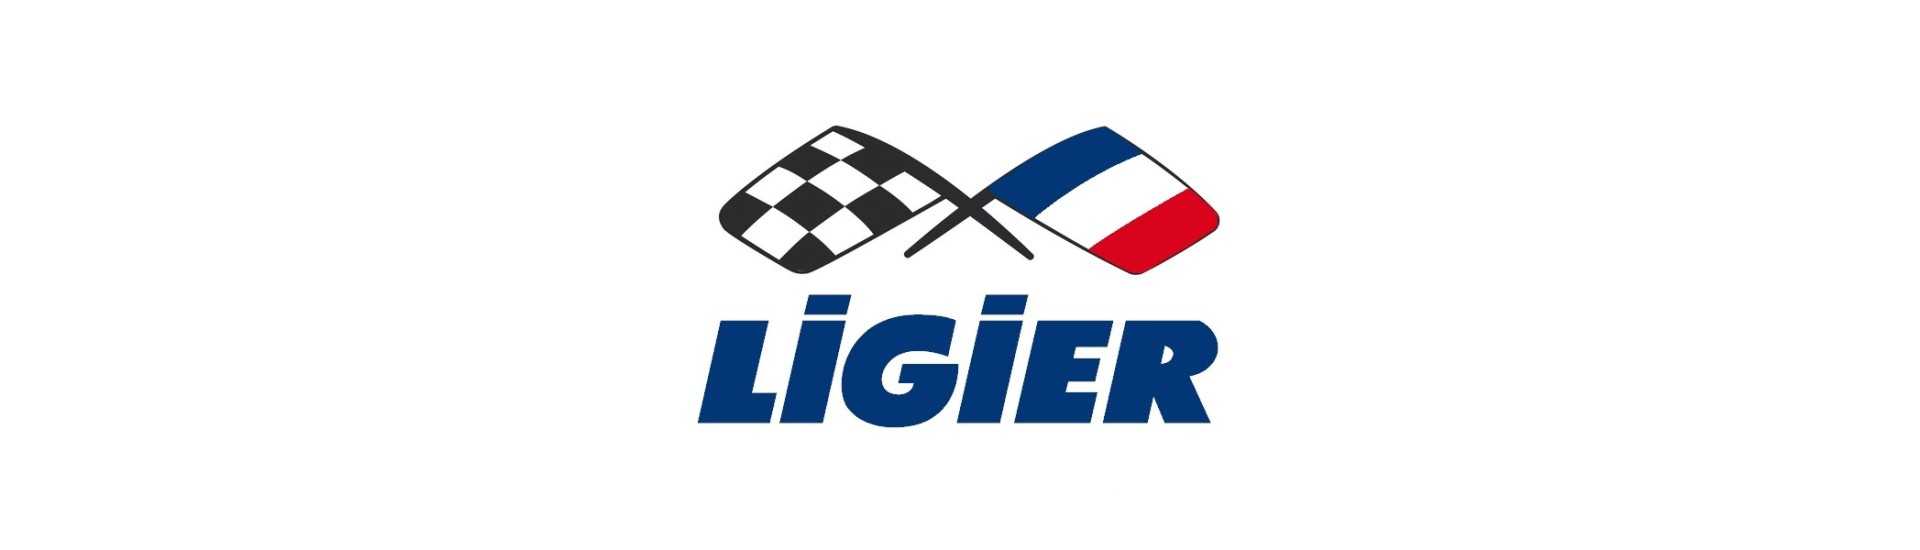 Cerchio al miglior prezzo per un'auto senza patente Ligier